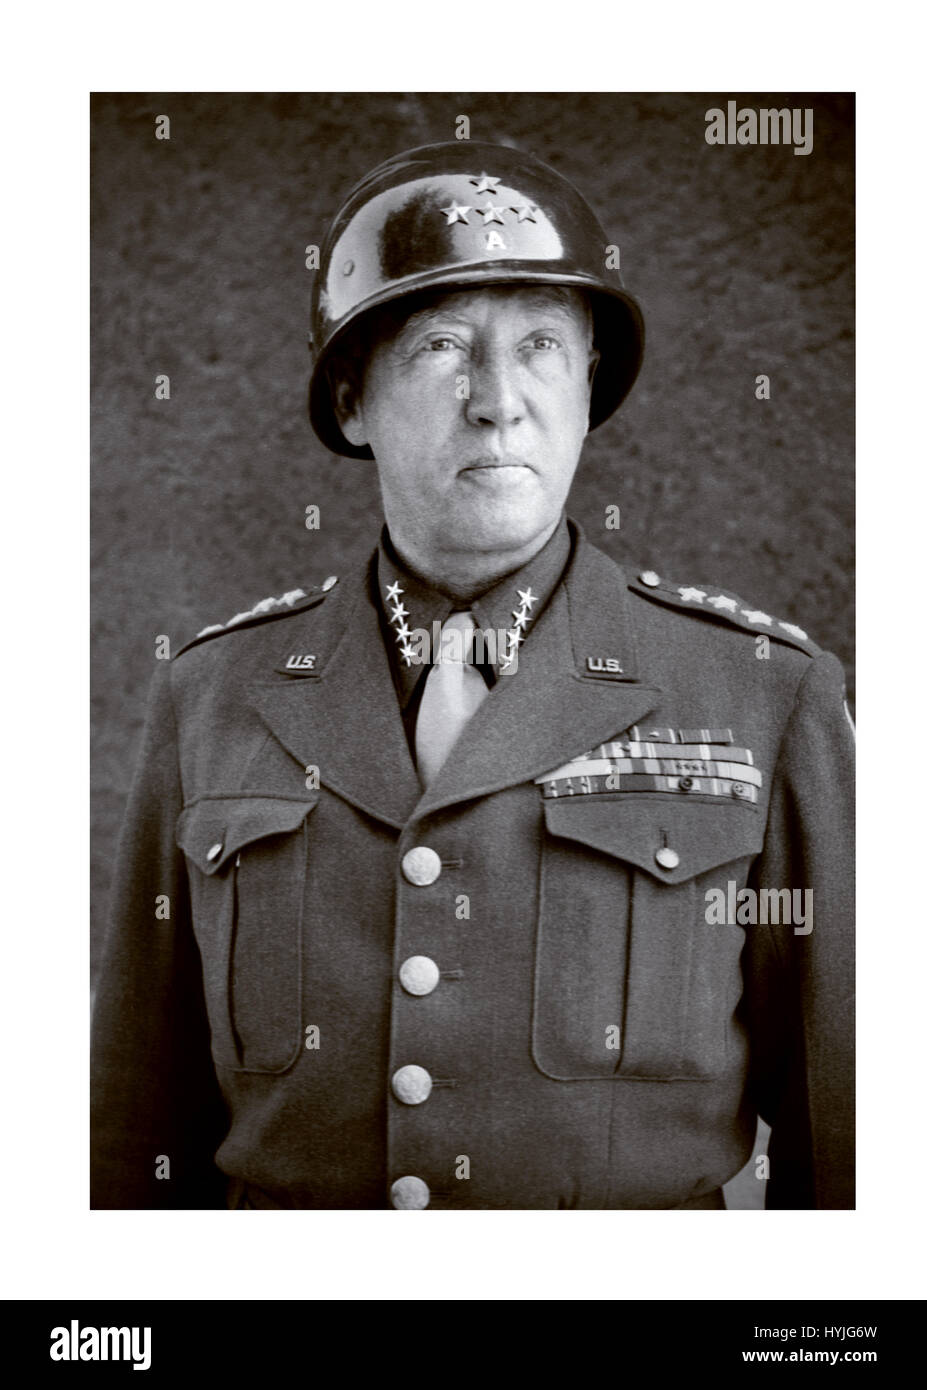 General George Smith Patton Jr. (11. November 1885 – 21. Dezember 1945) war ein Offizier der United States Army, die US 7. Armee in den Mittelmeer- und europäischen Theatern des zweiten Weltkrieges befehligte, aber ist am besten bekannt für seine Führung der US Dritte Armee in Frankreich und Deutschland nach der Alliierten Invasion in der Normandie im Juni 1944. Stockfoto